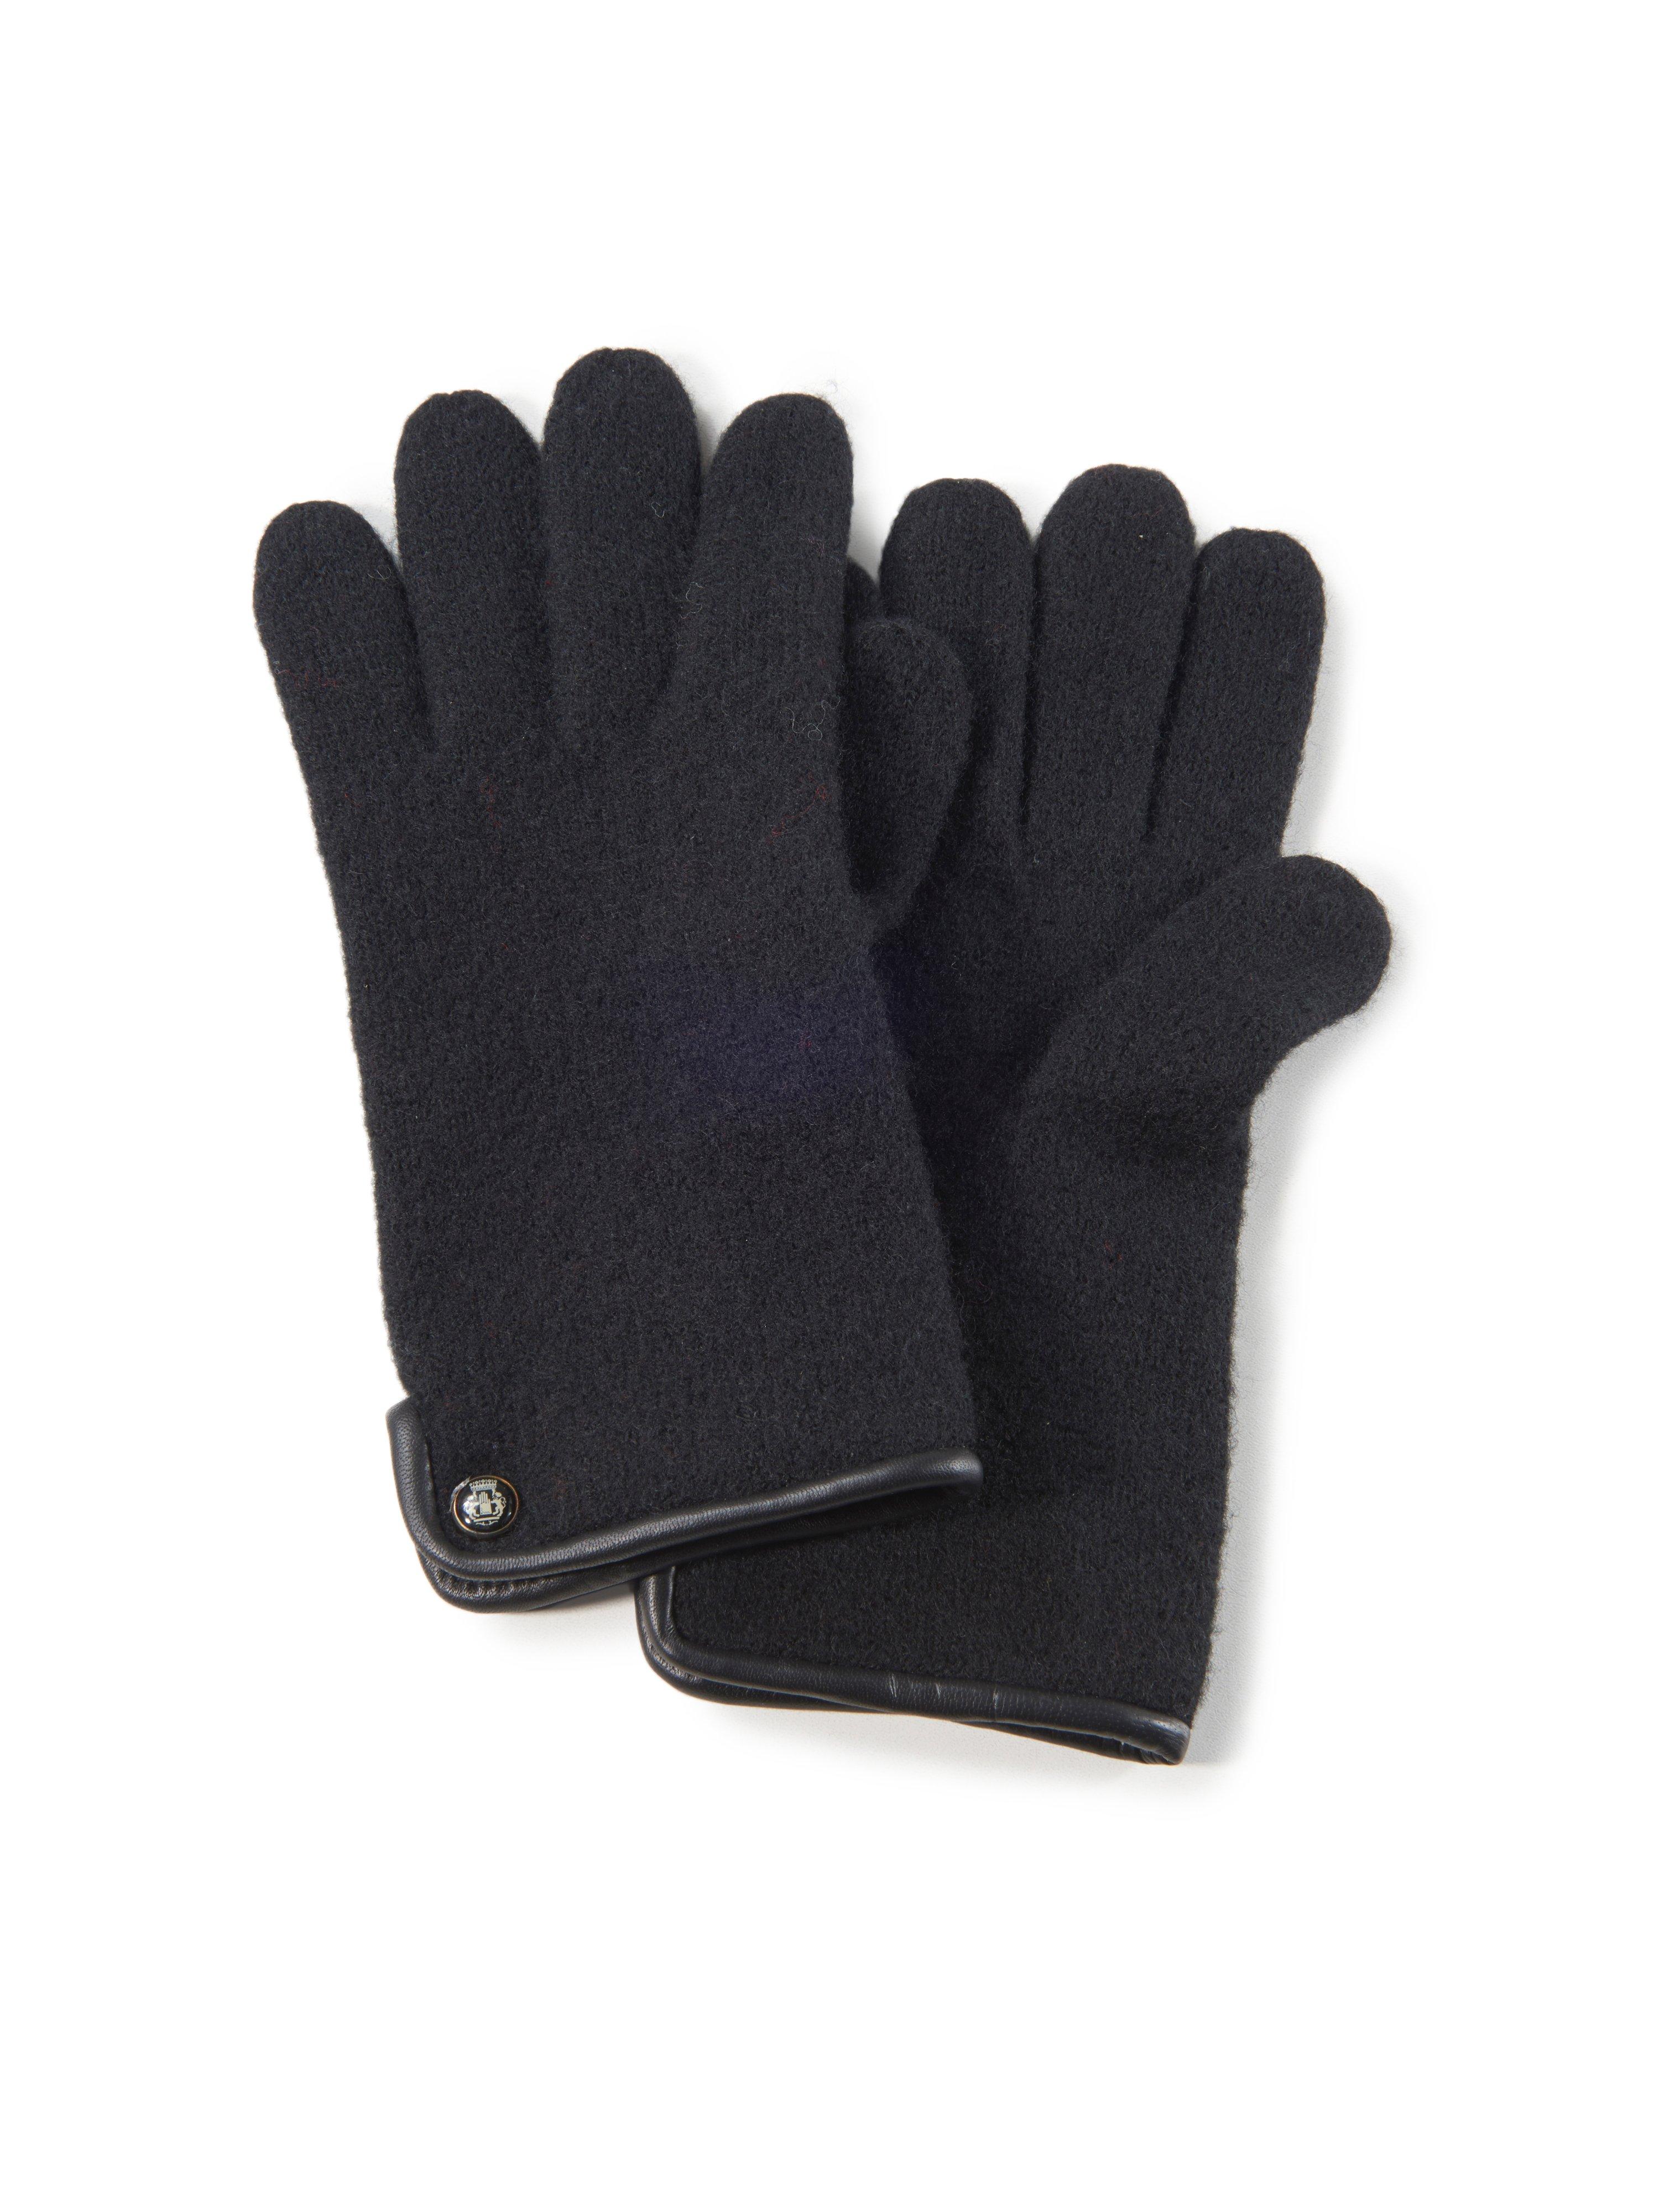 Roeckl - Les gants 100% laine vierge